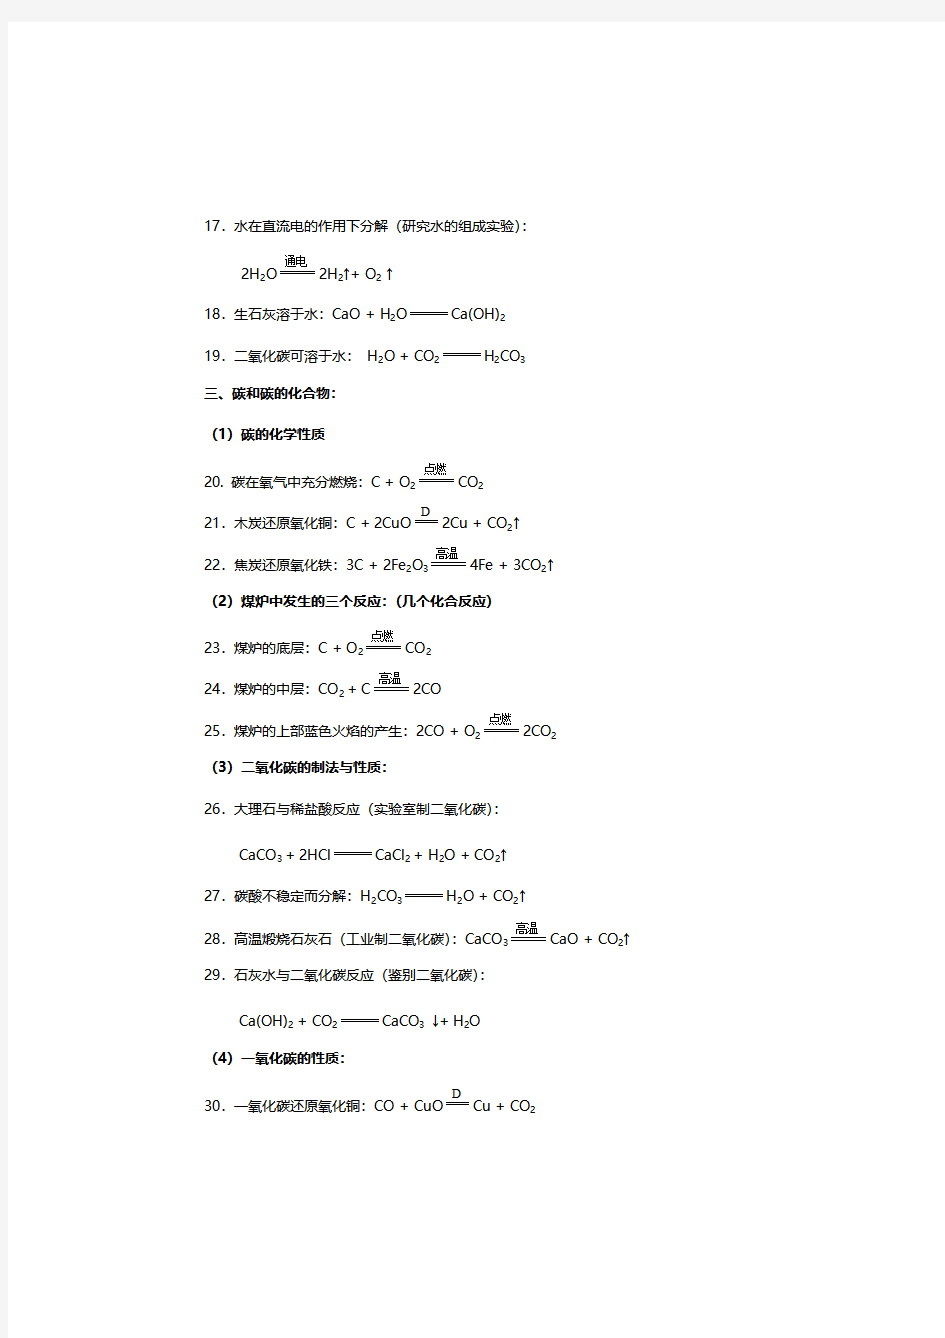 中考化学方程式分类汇总,初中化学方程式大全(完整版)可下载打印版